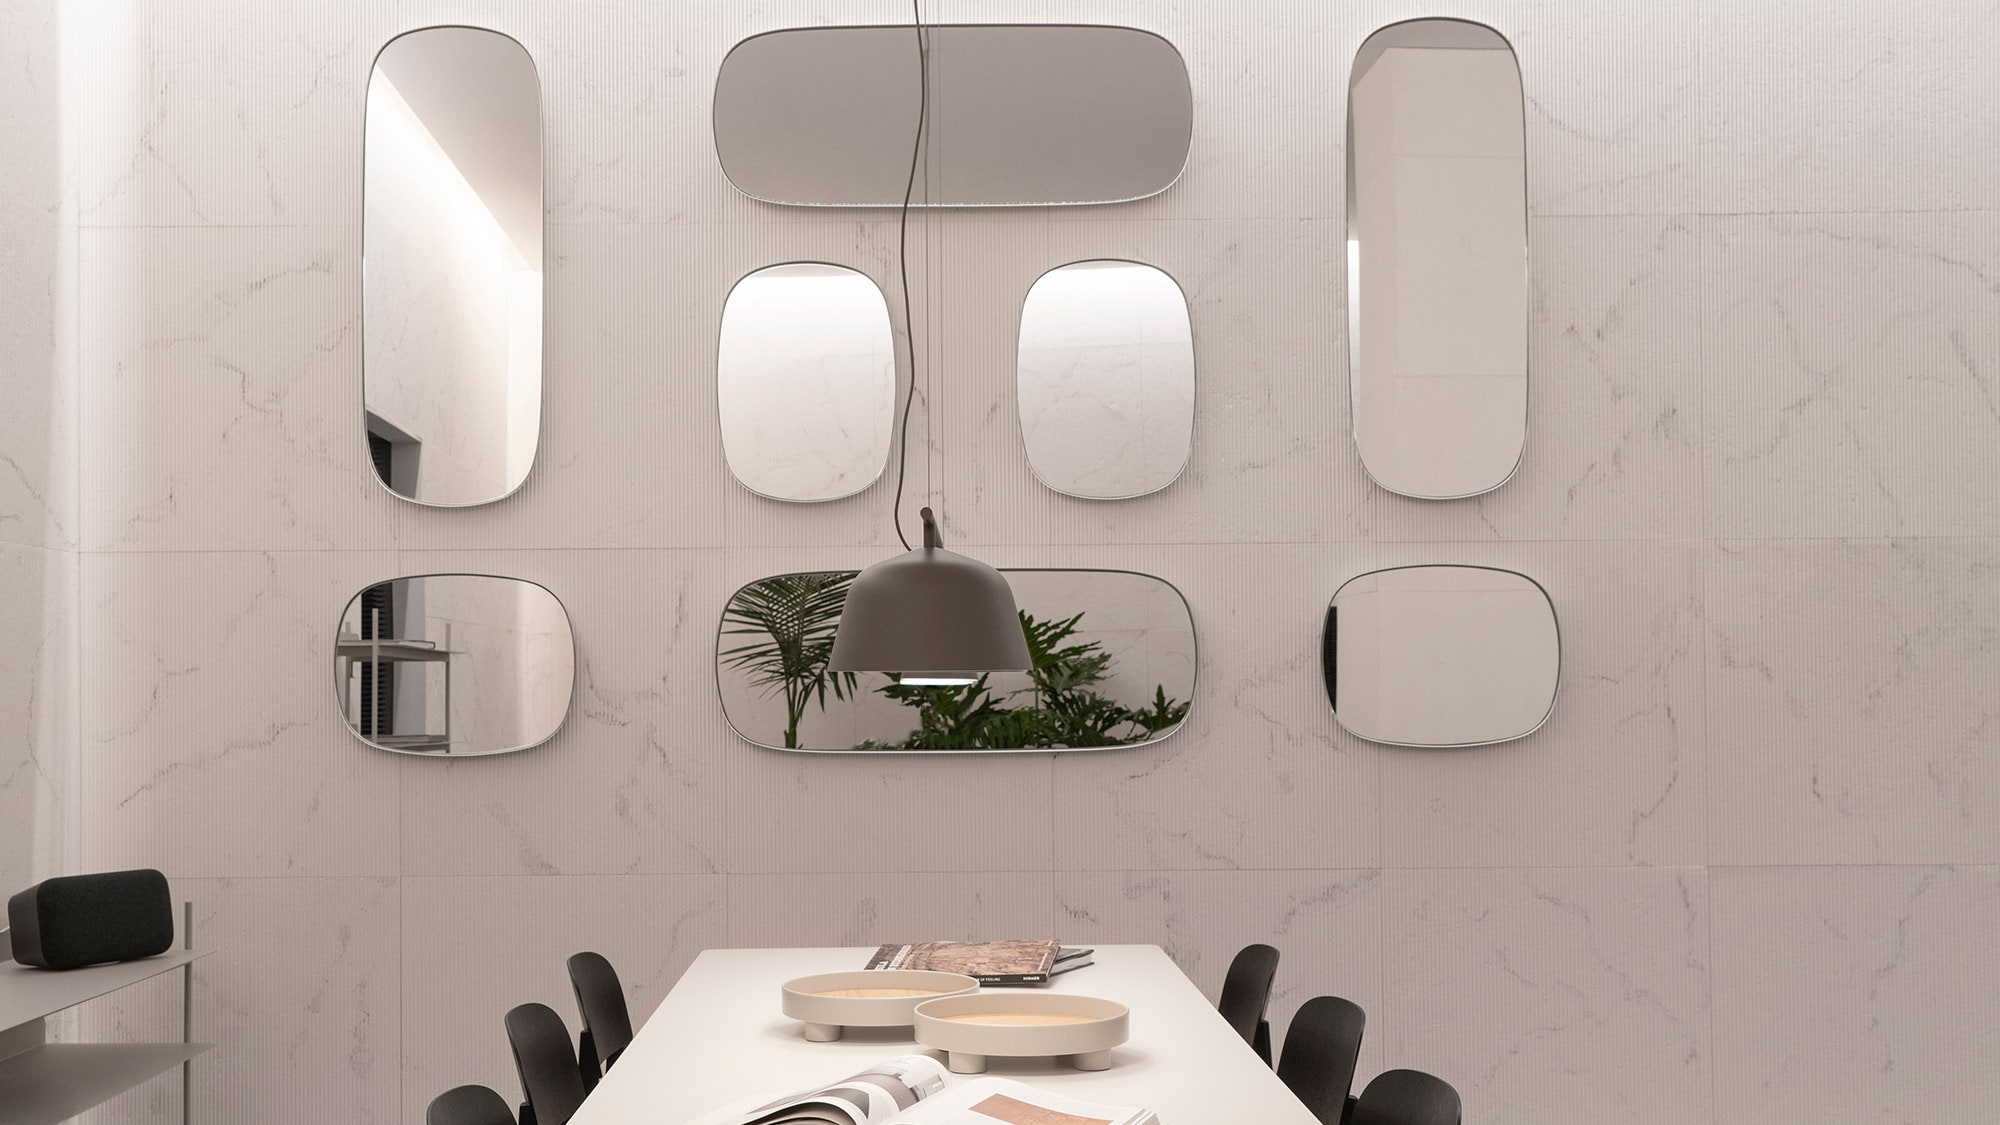 Как дизайн влияет на самочувствие инсталляция A Space for Being от Google Design Studio